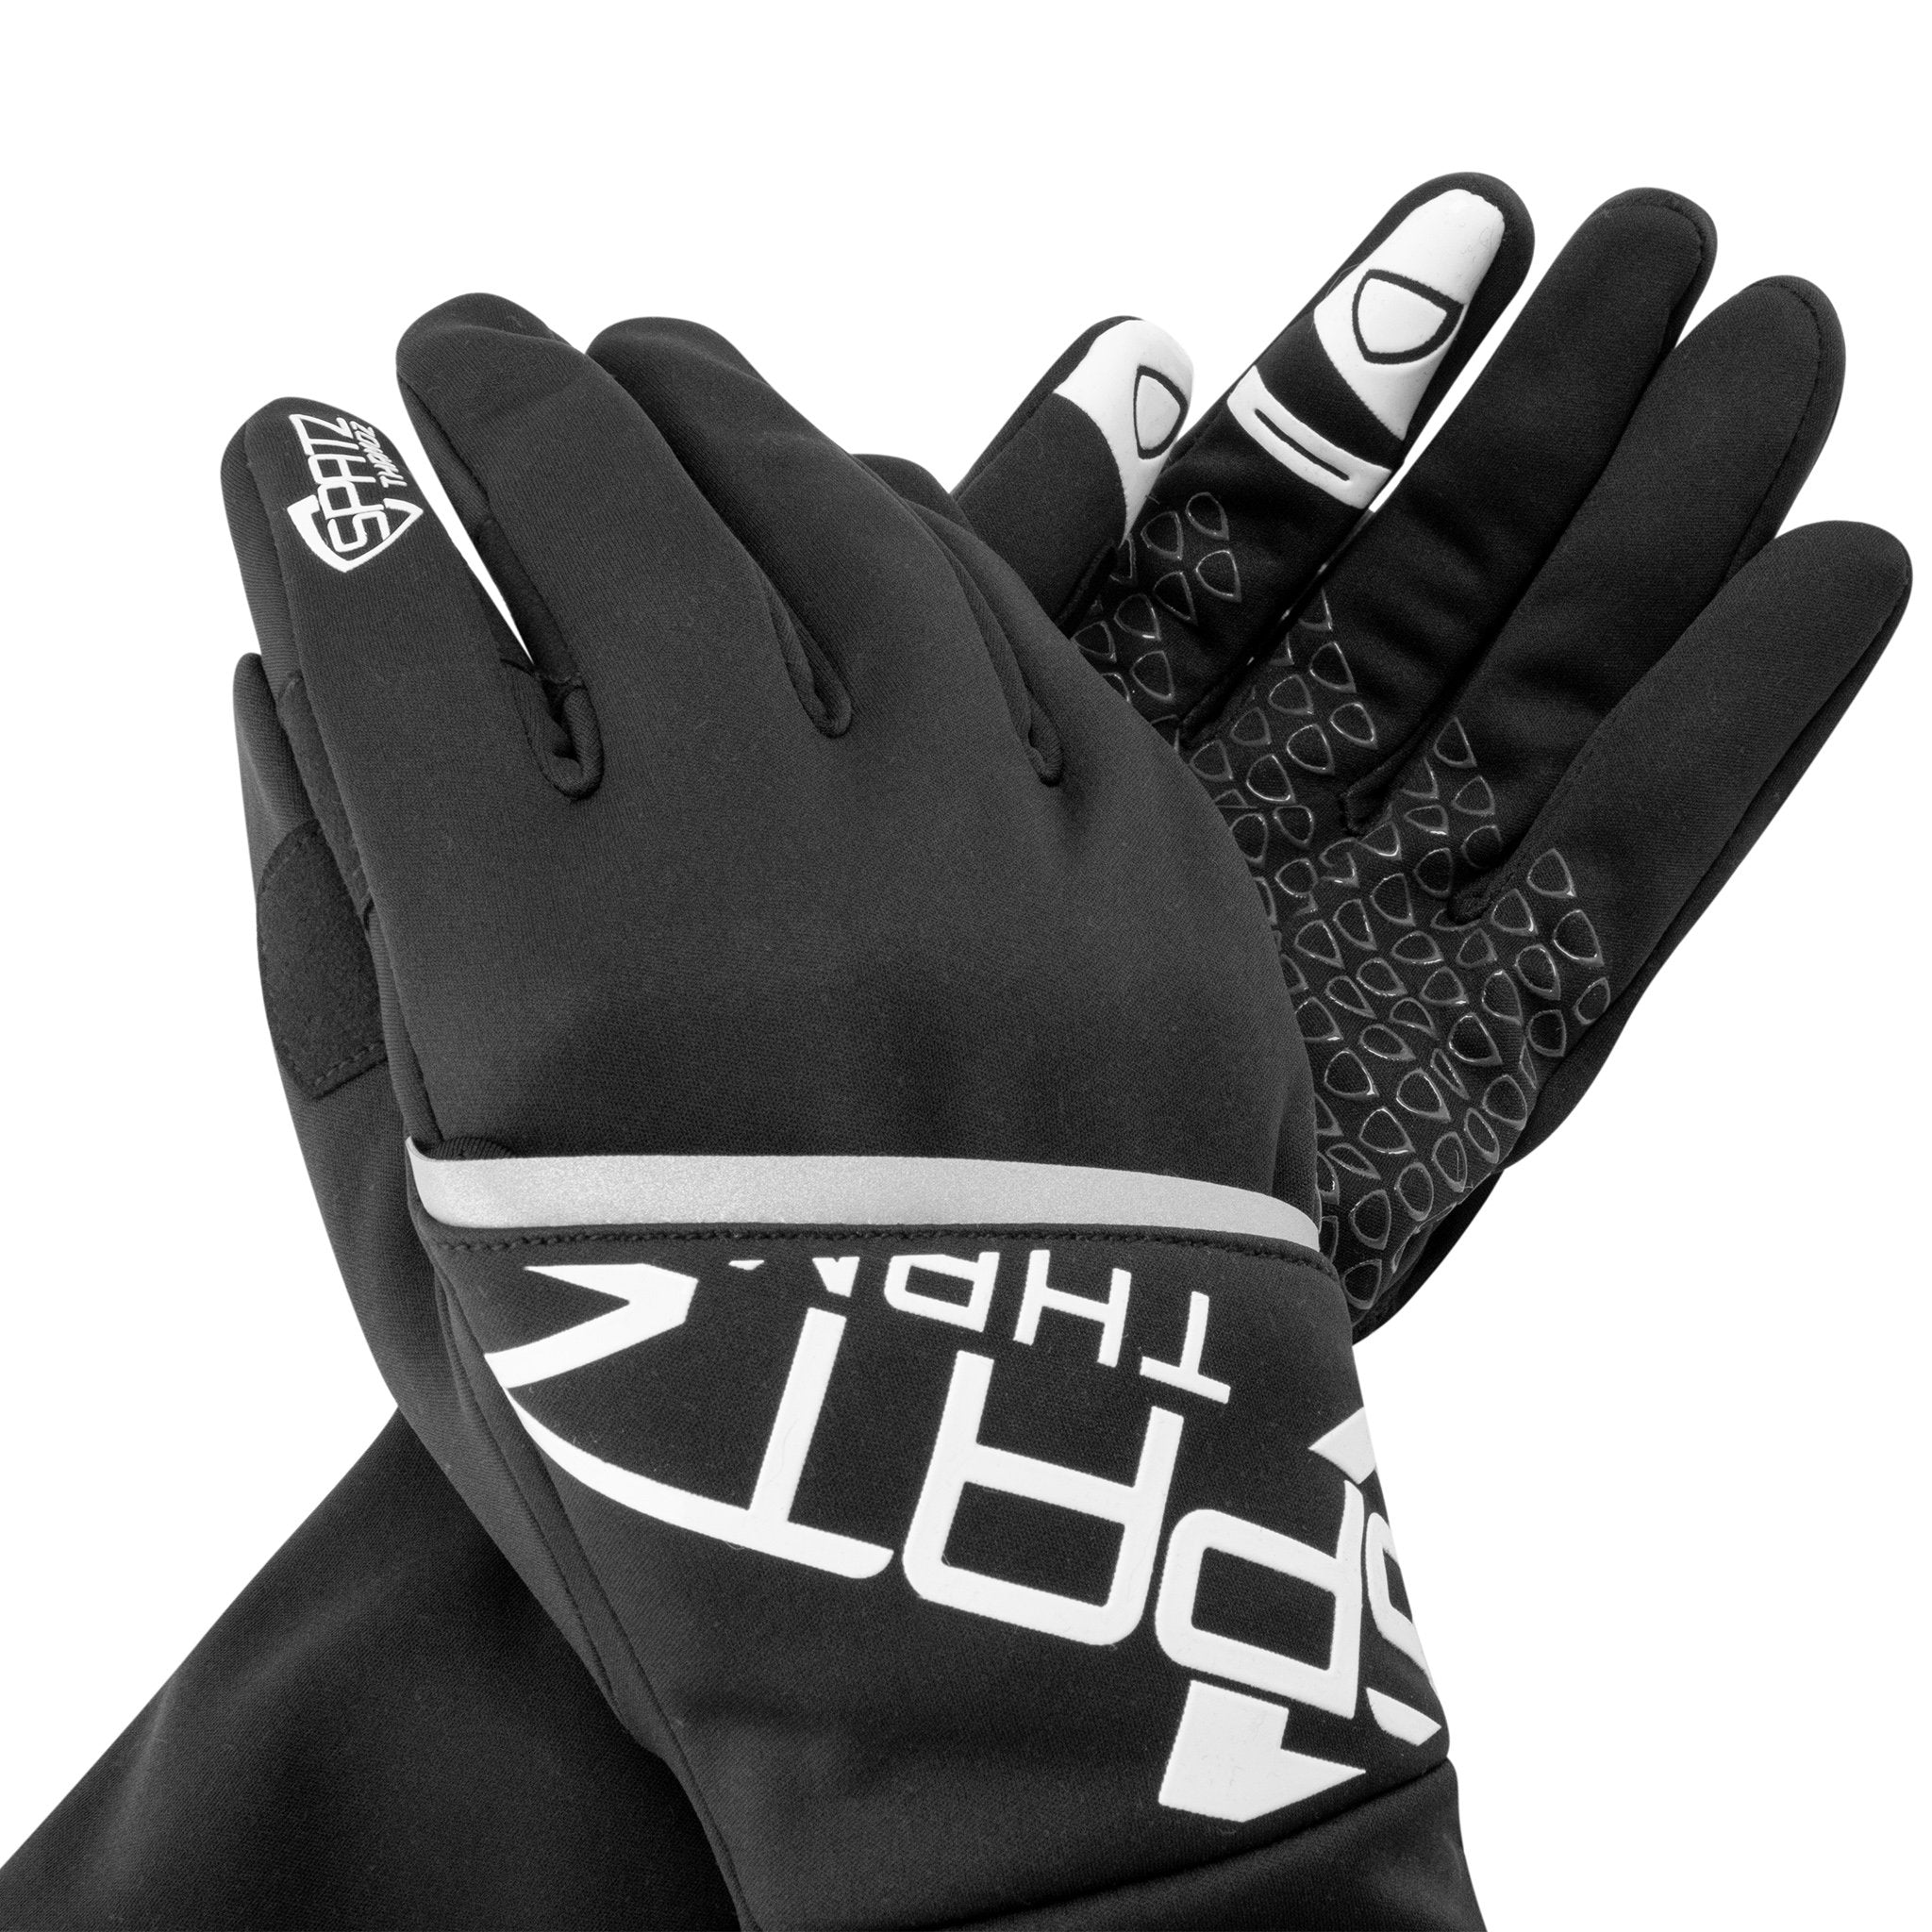 SPATZ "THRMOZ" Deep Winter Gloves